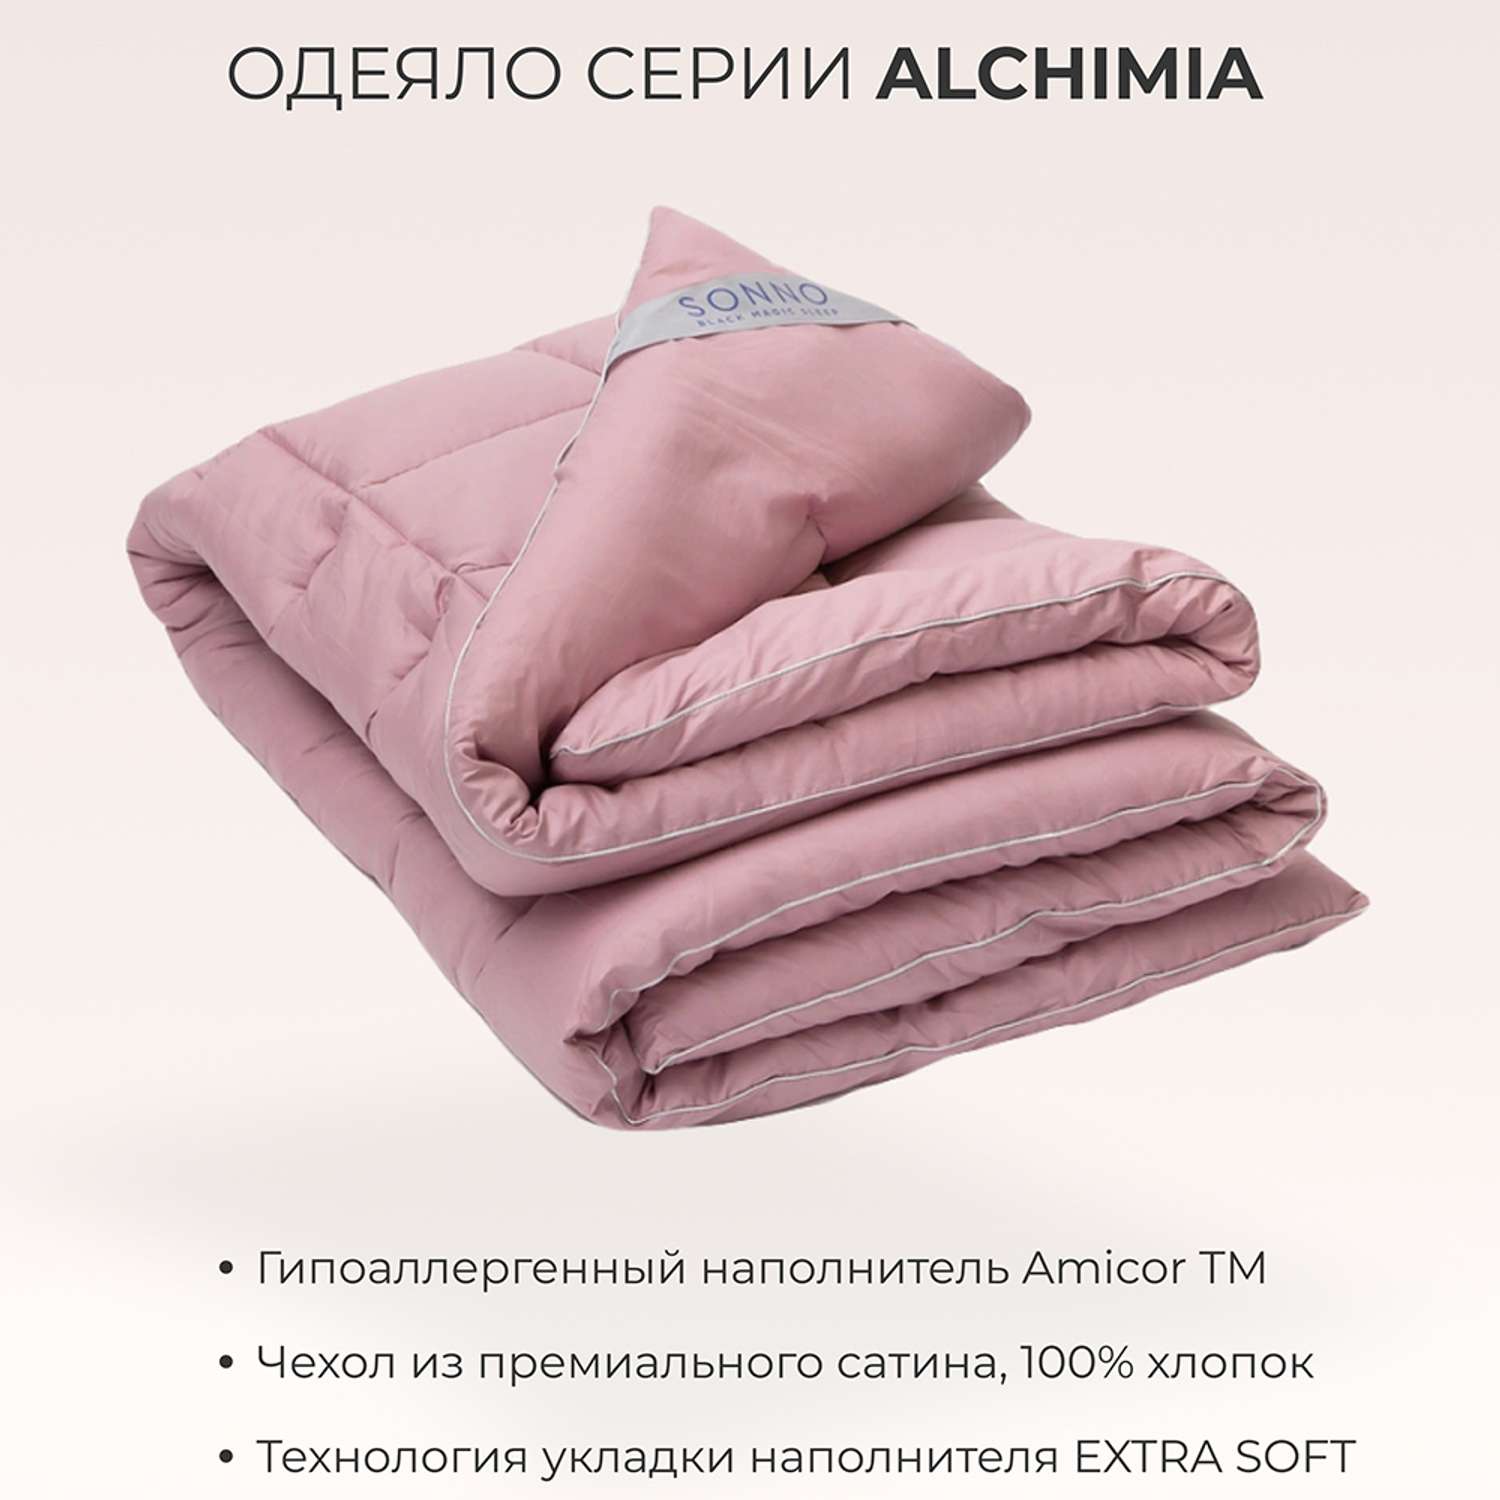 Одеяло SONNO ALCHIMIA 2-x спальный 170x205 всесезонное с наполнителем Amicor розовый - фото 2